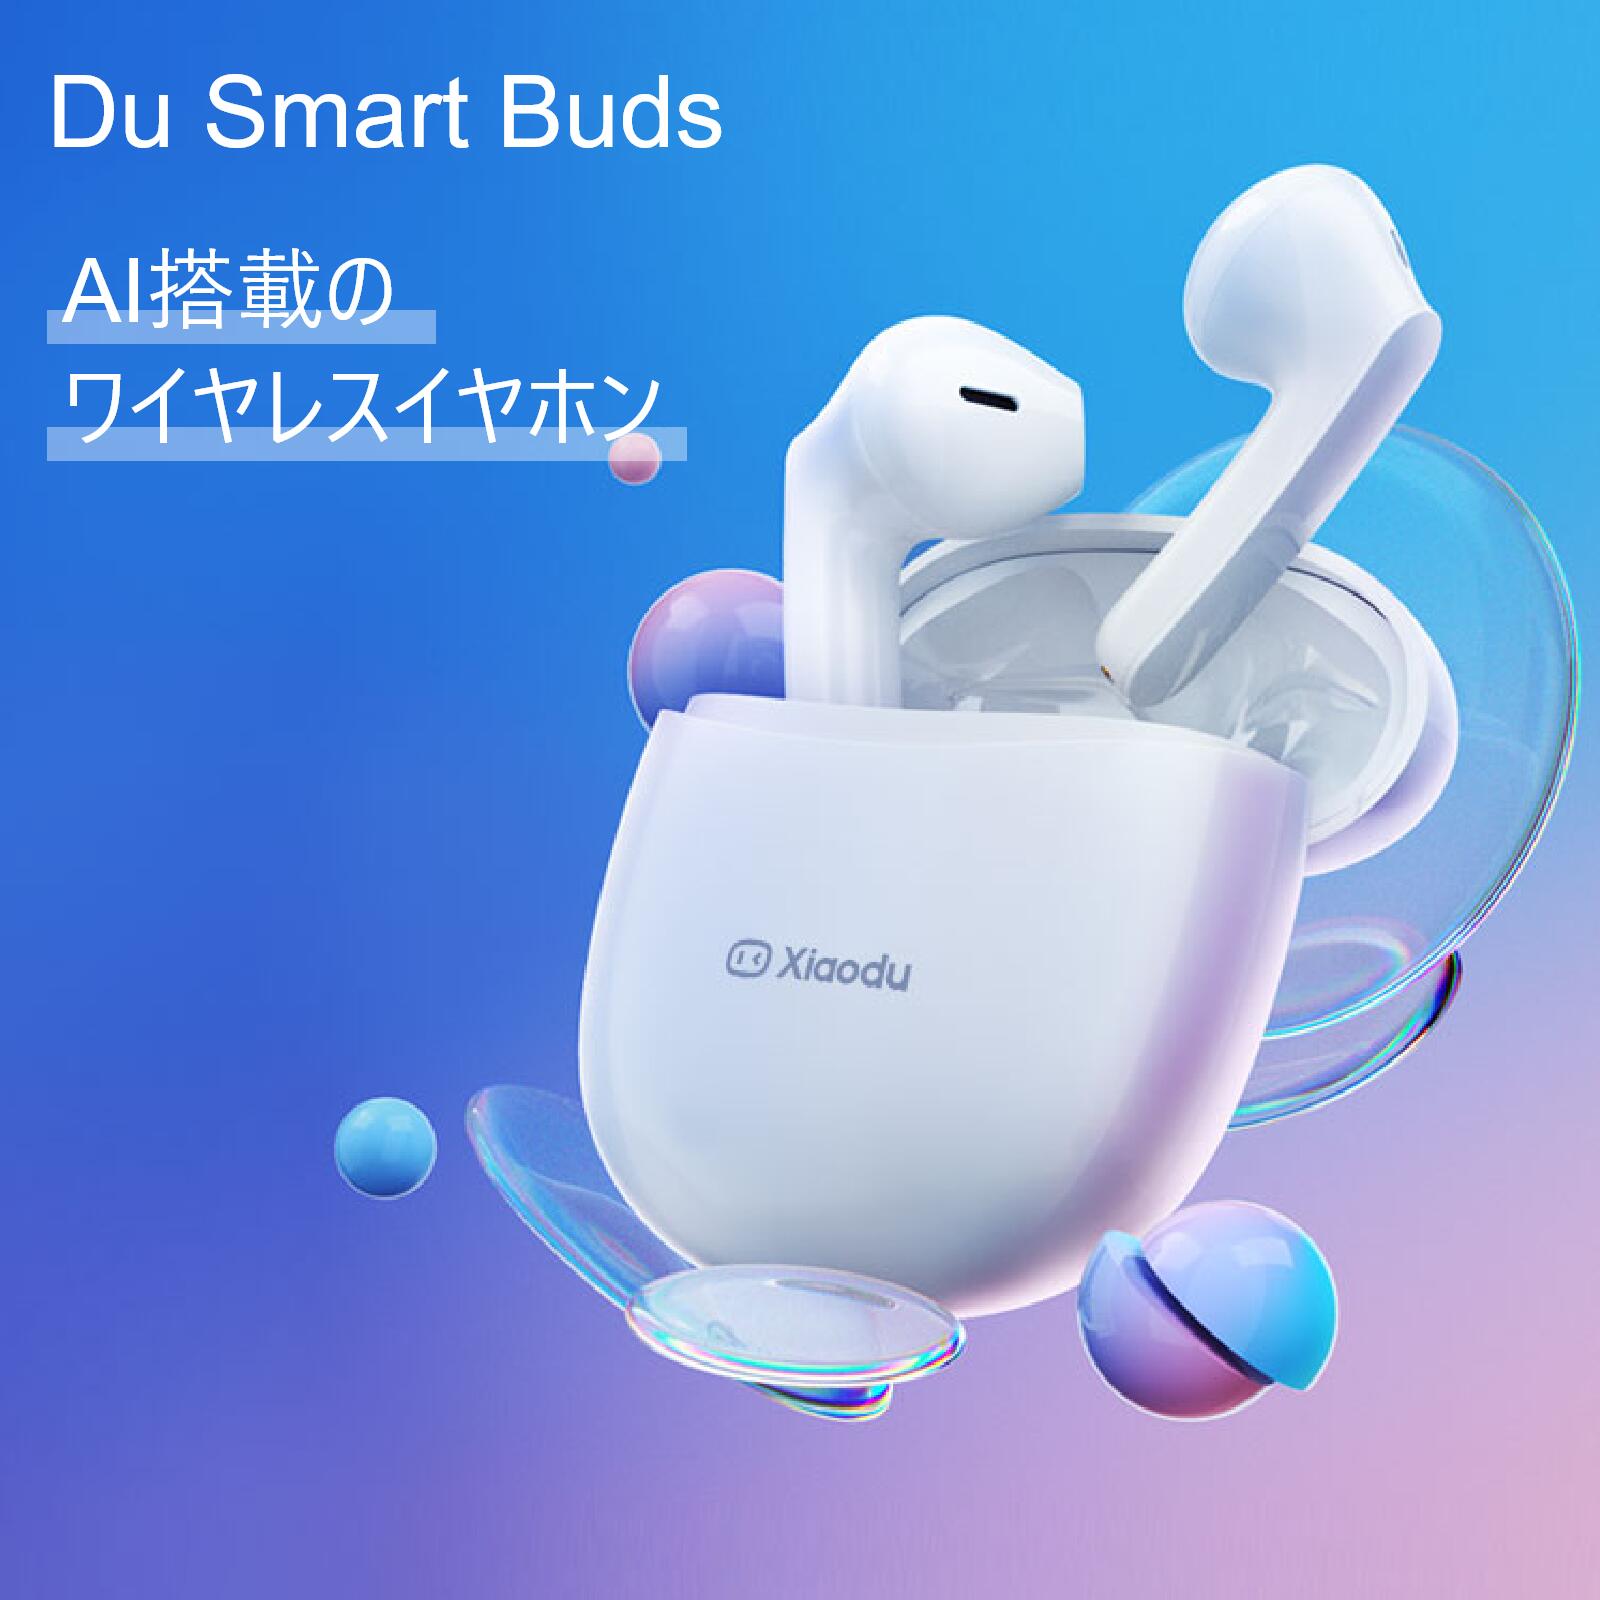 《AI搭載の次世代完全ワイヤレスイヤホン》Du Smart Buds アプリ連携でリアルタイムで日英中の自動文字起こし可能！ボイスアシスタント連携も 完全ワイヤレスイヤホン 13mmドライバー   人工知能 完全ワイヤレスイヤホン Du Smart Buds   ワイヤレスイヤホン 文字起こし Bluetooth 5.0 ENCノイズキャンセリング イヤホン 低遅延 左右分離型 マイク付き ブルートゥース IPX4防水 iPhone Android適用